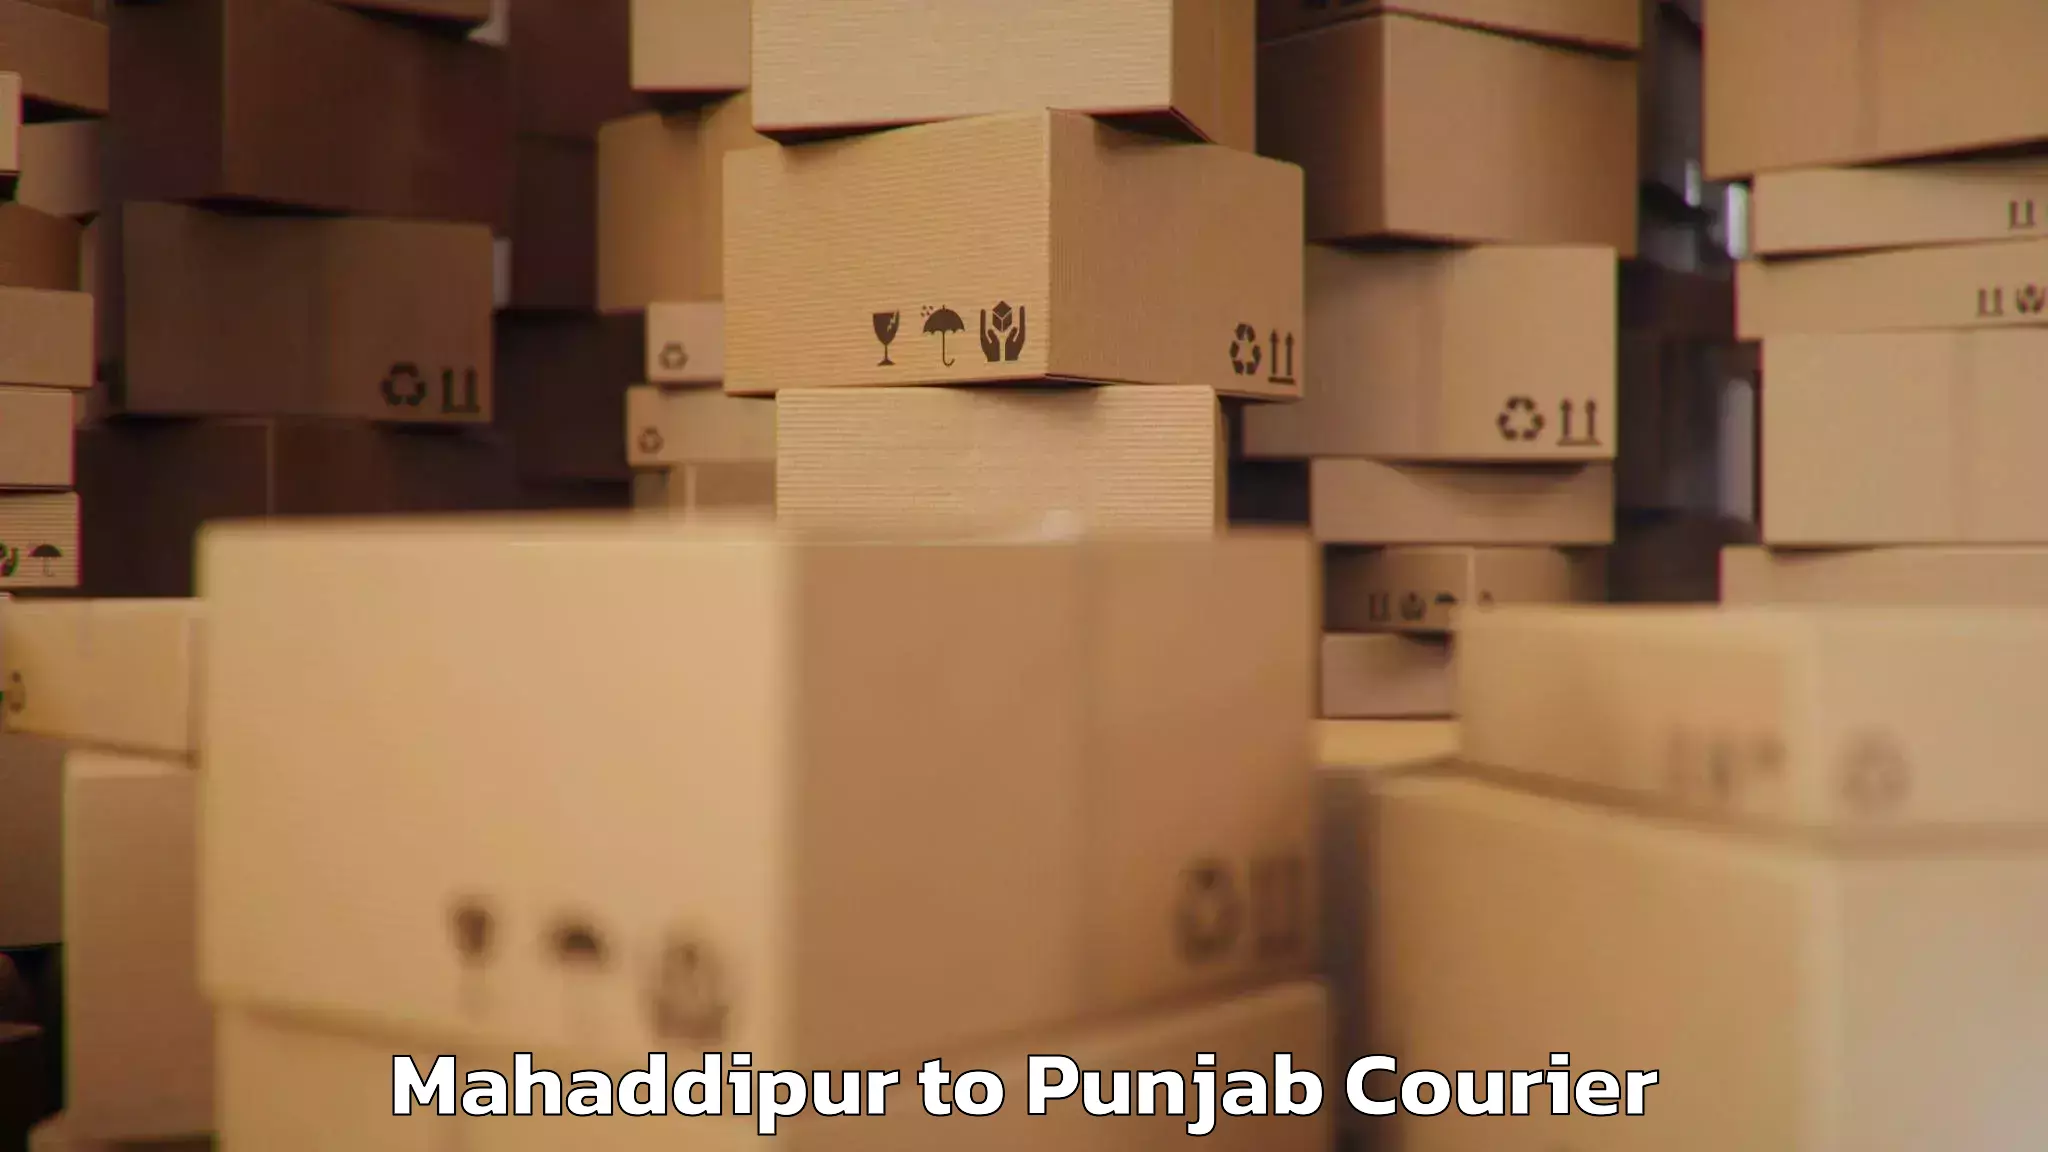 Baggage transport management Mahaddipur to Punjab